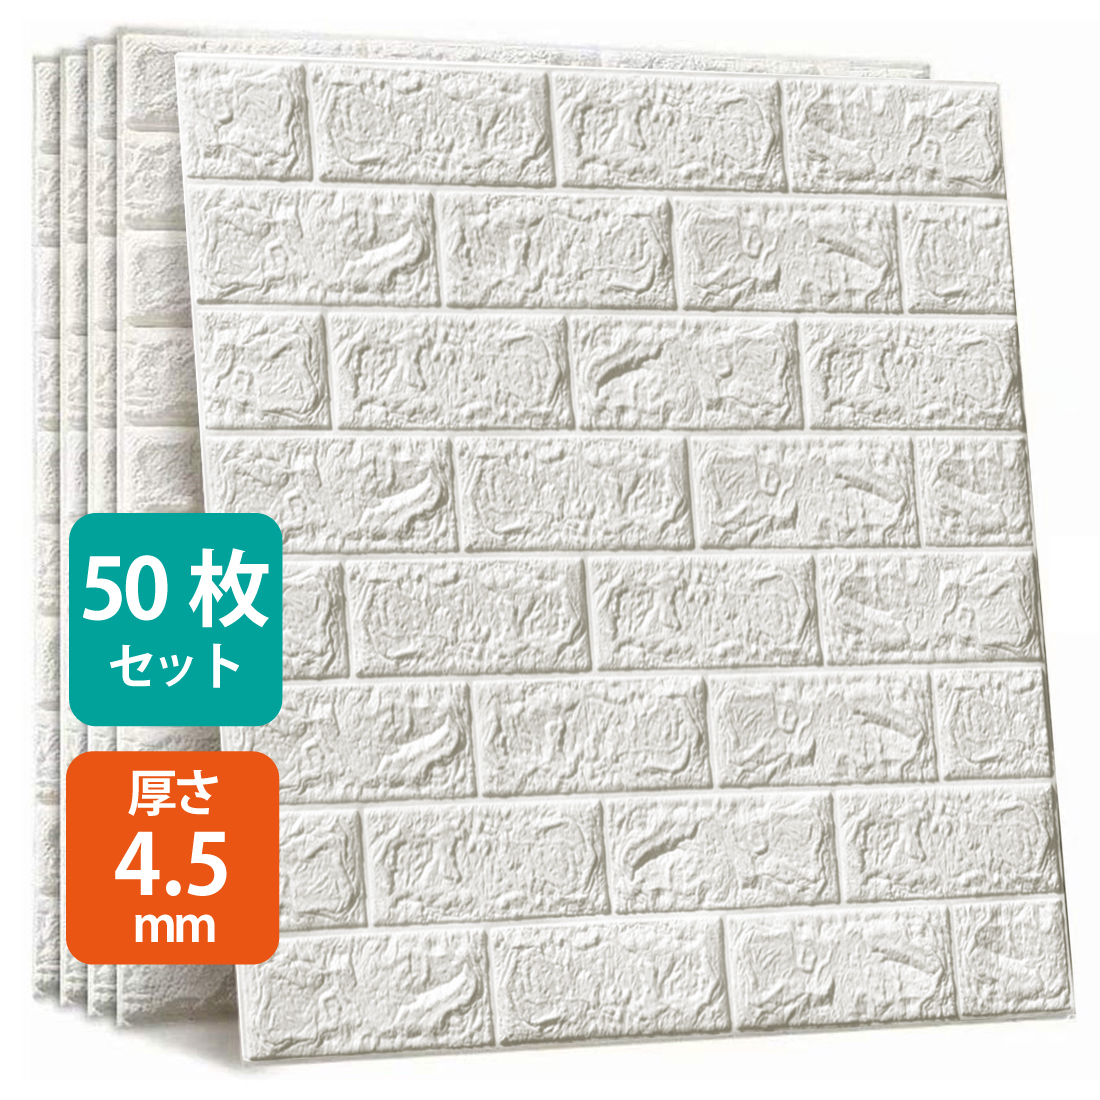 50枚セット 3D 壁紙 レンガ調 DIYクッション シール シート 70*77cm 立体 壁用 レンガ 貼るだけ 壁材 ブリック